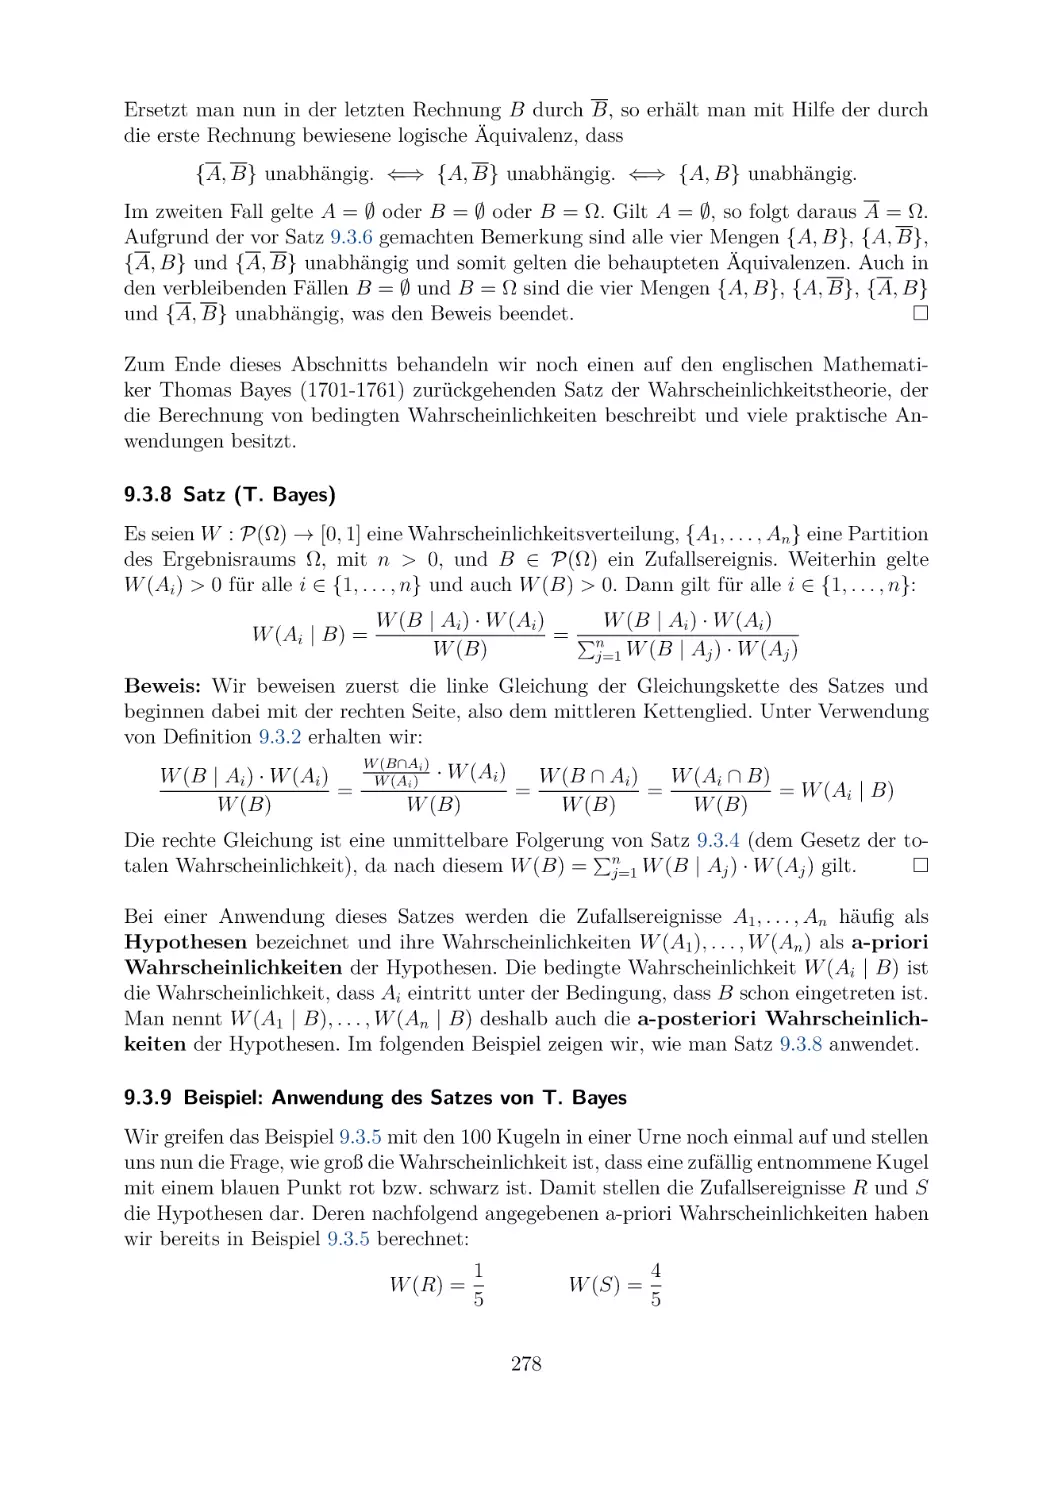 9.3.8 Satz (T. Bayes)
9.3.9 Beispiel